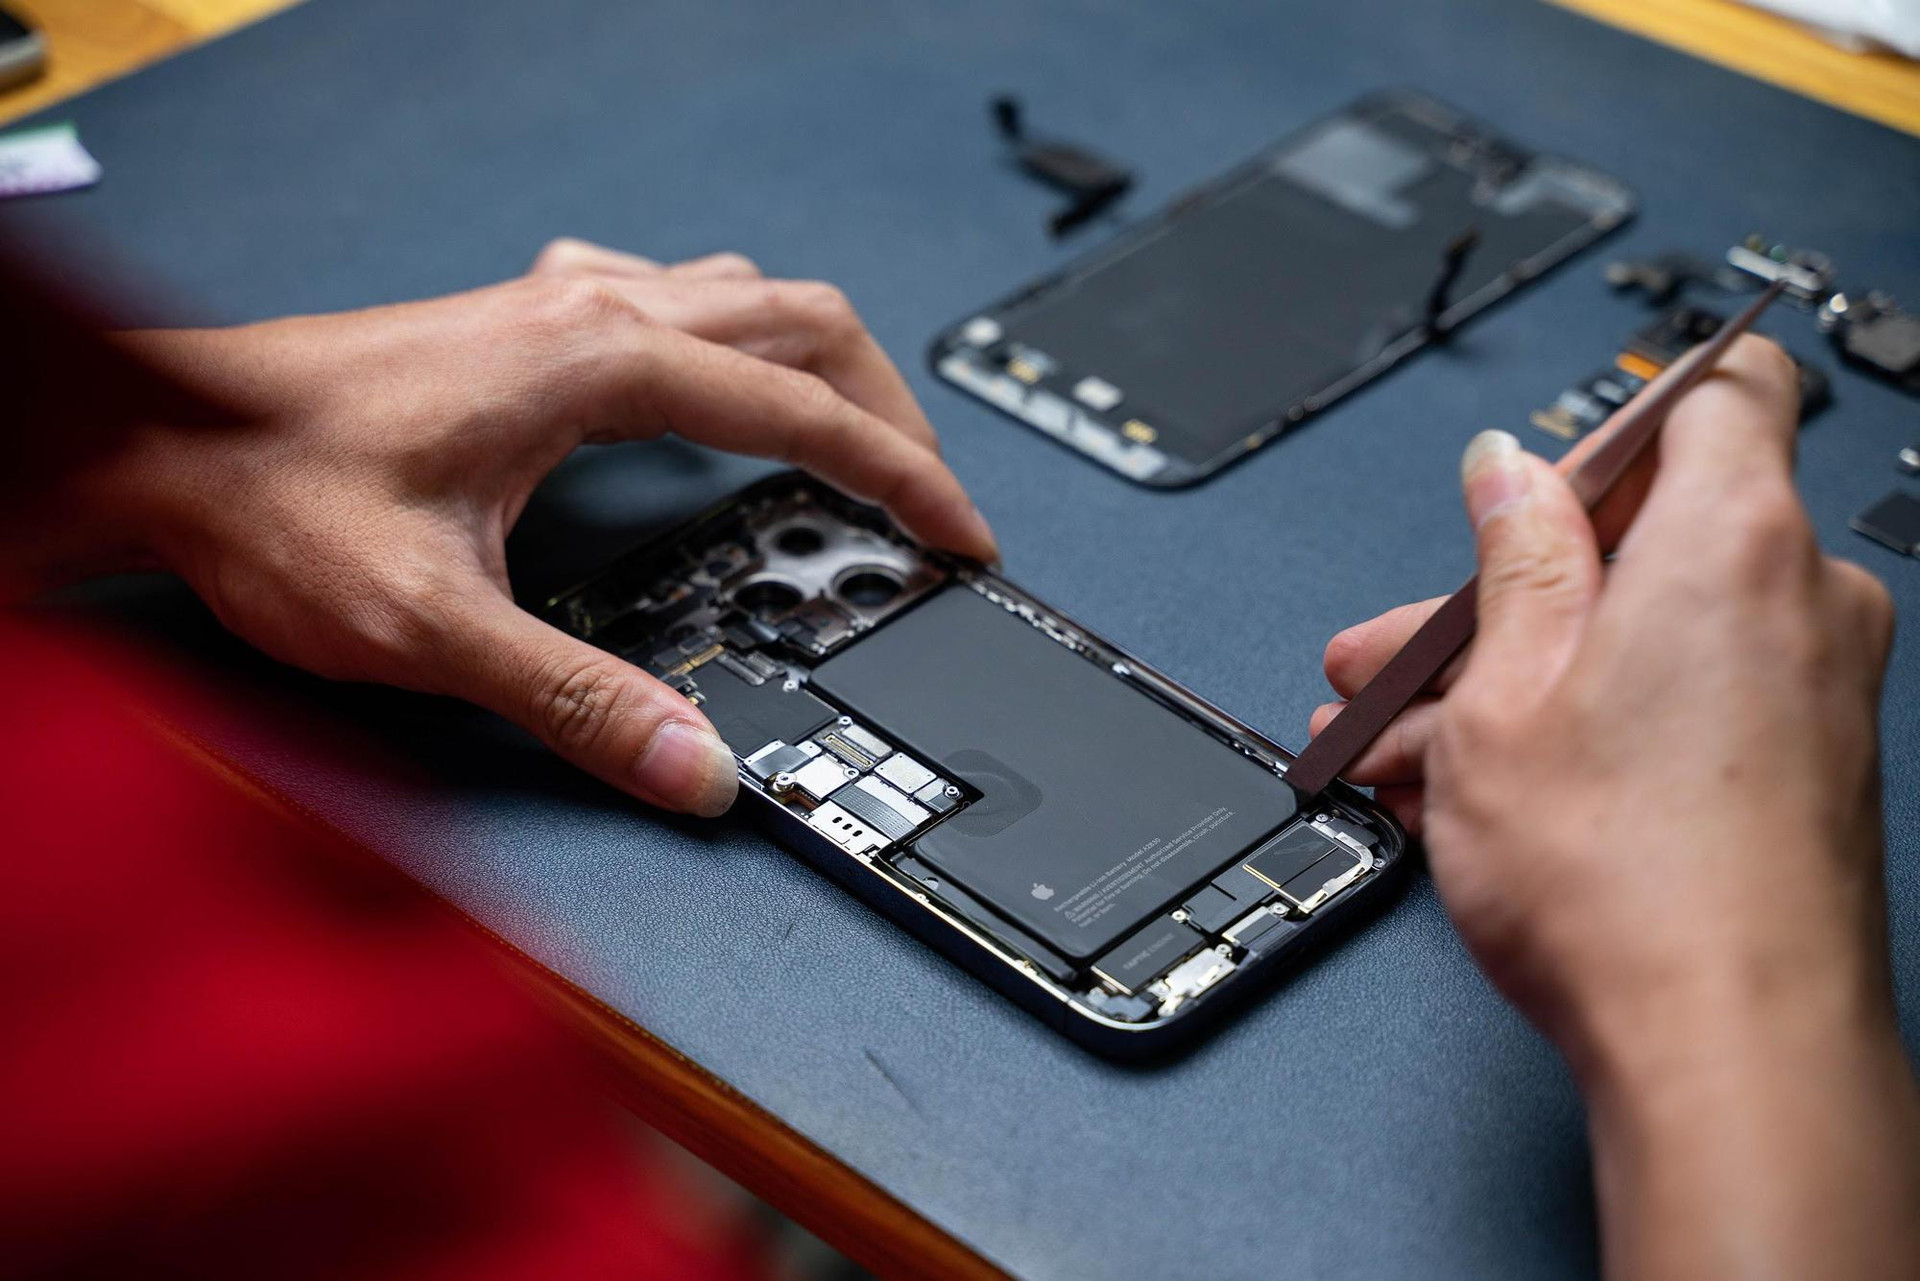 Điện Thoại Vui mở linh kiện bên trong iPhone 14 Pro Max đầu tiên tại Việt Nam - Ảnh 5.